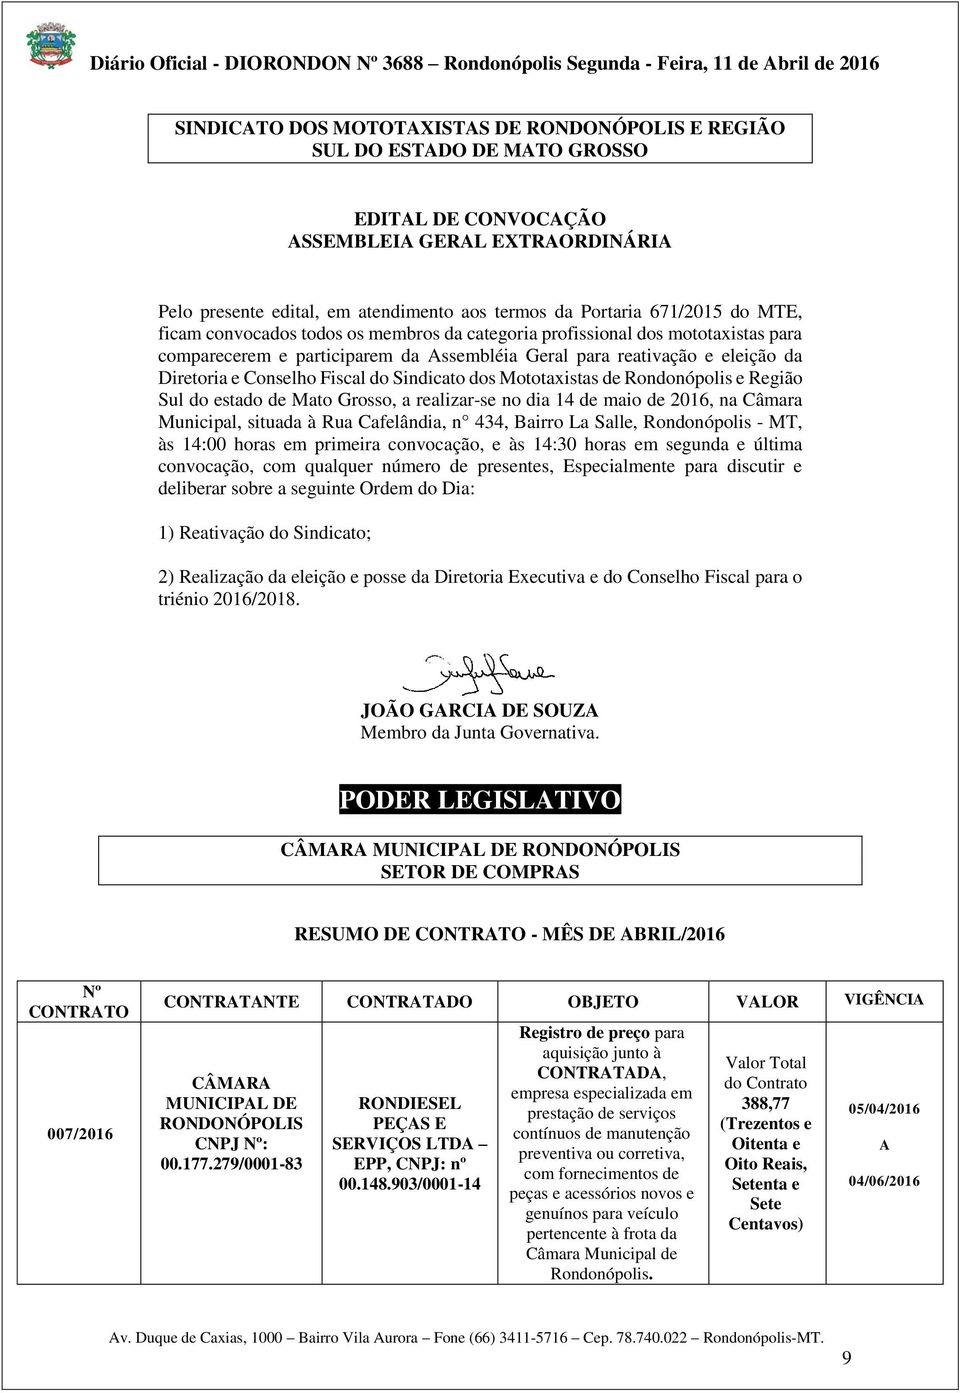 Fiscal do Sindicato dos Mototaxistas de Rondonópolis e Região Sul do estado de Mato Grosso, a realizar-se no dia 14 de maio de 2016, na Câmara Municipal, situada à Rua Cafelândia, n 434, Bairro La